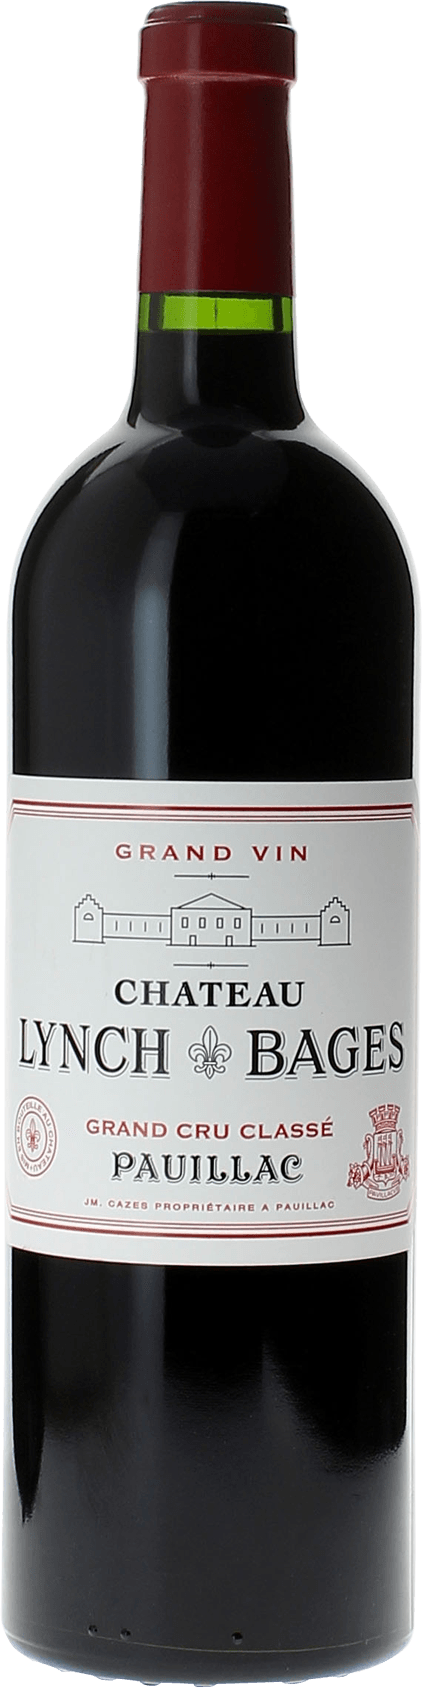 Lynch bages 1979 5 me Grand cru class Pauillac, Bordeaux rouge